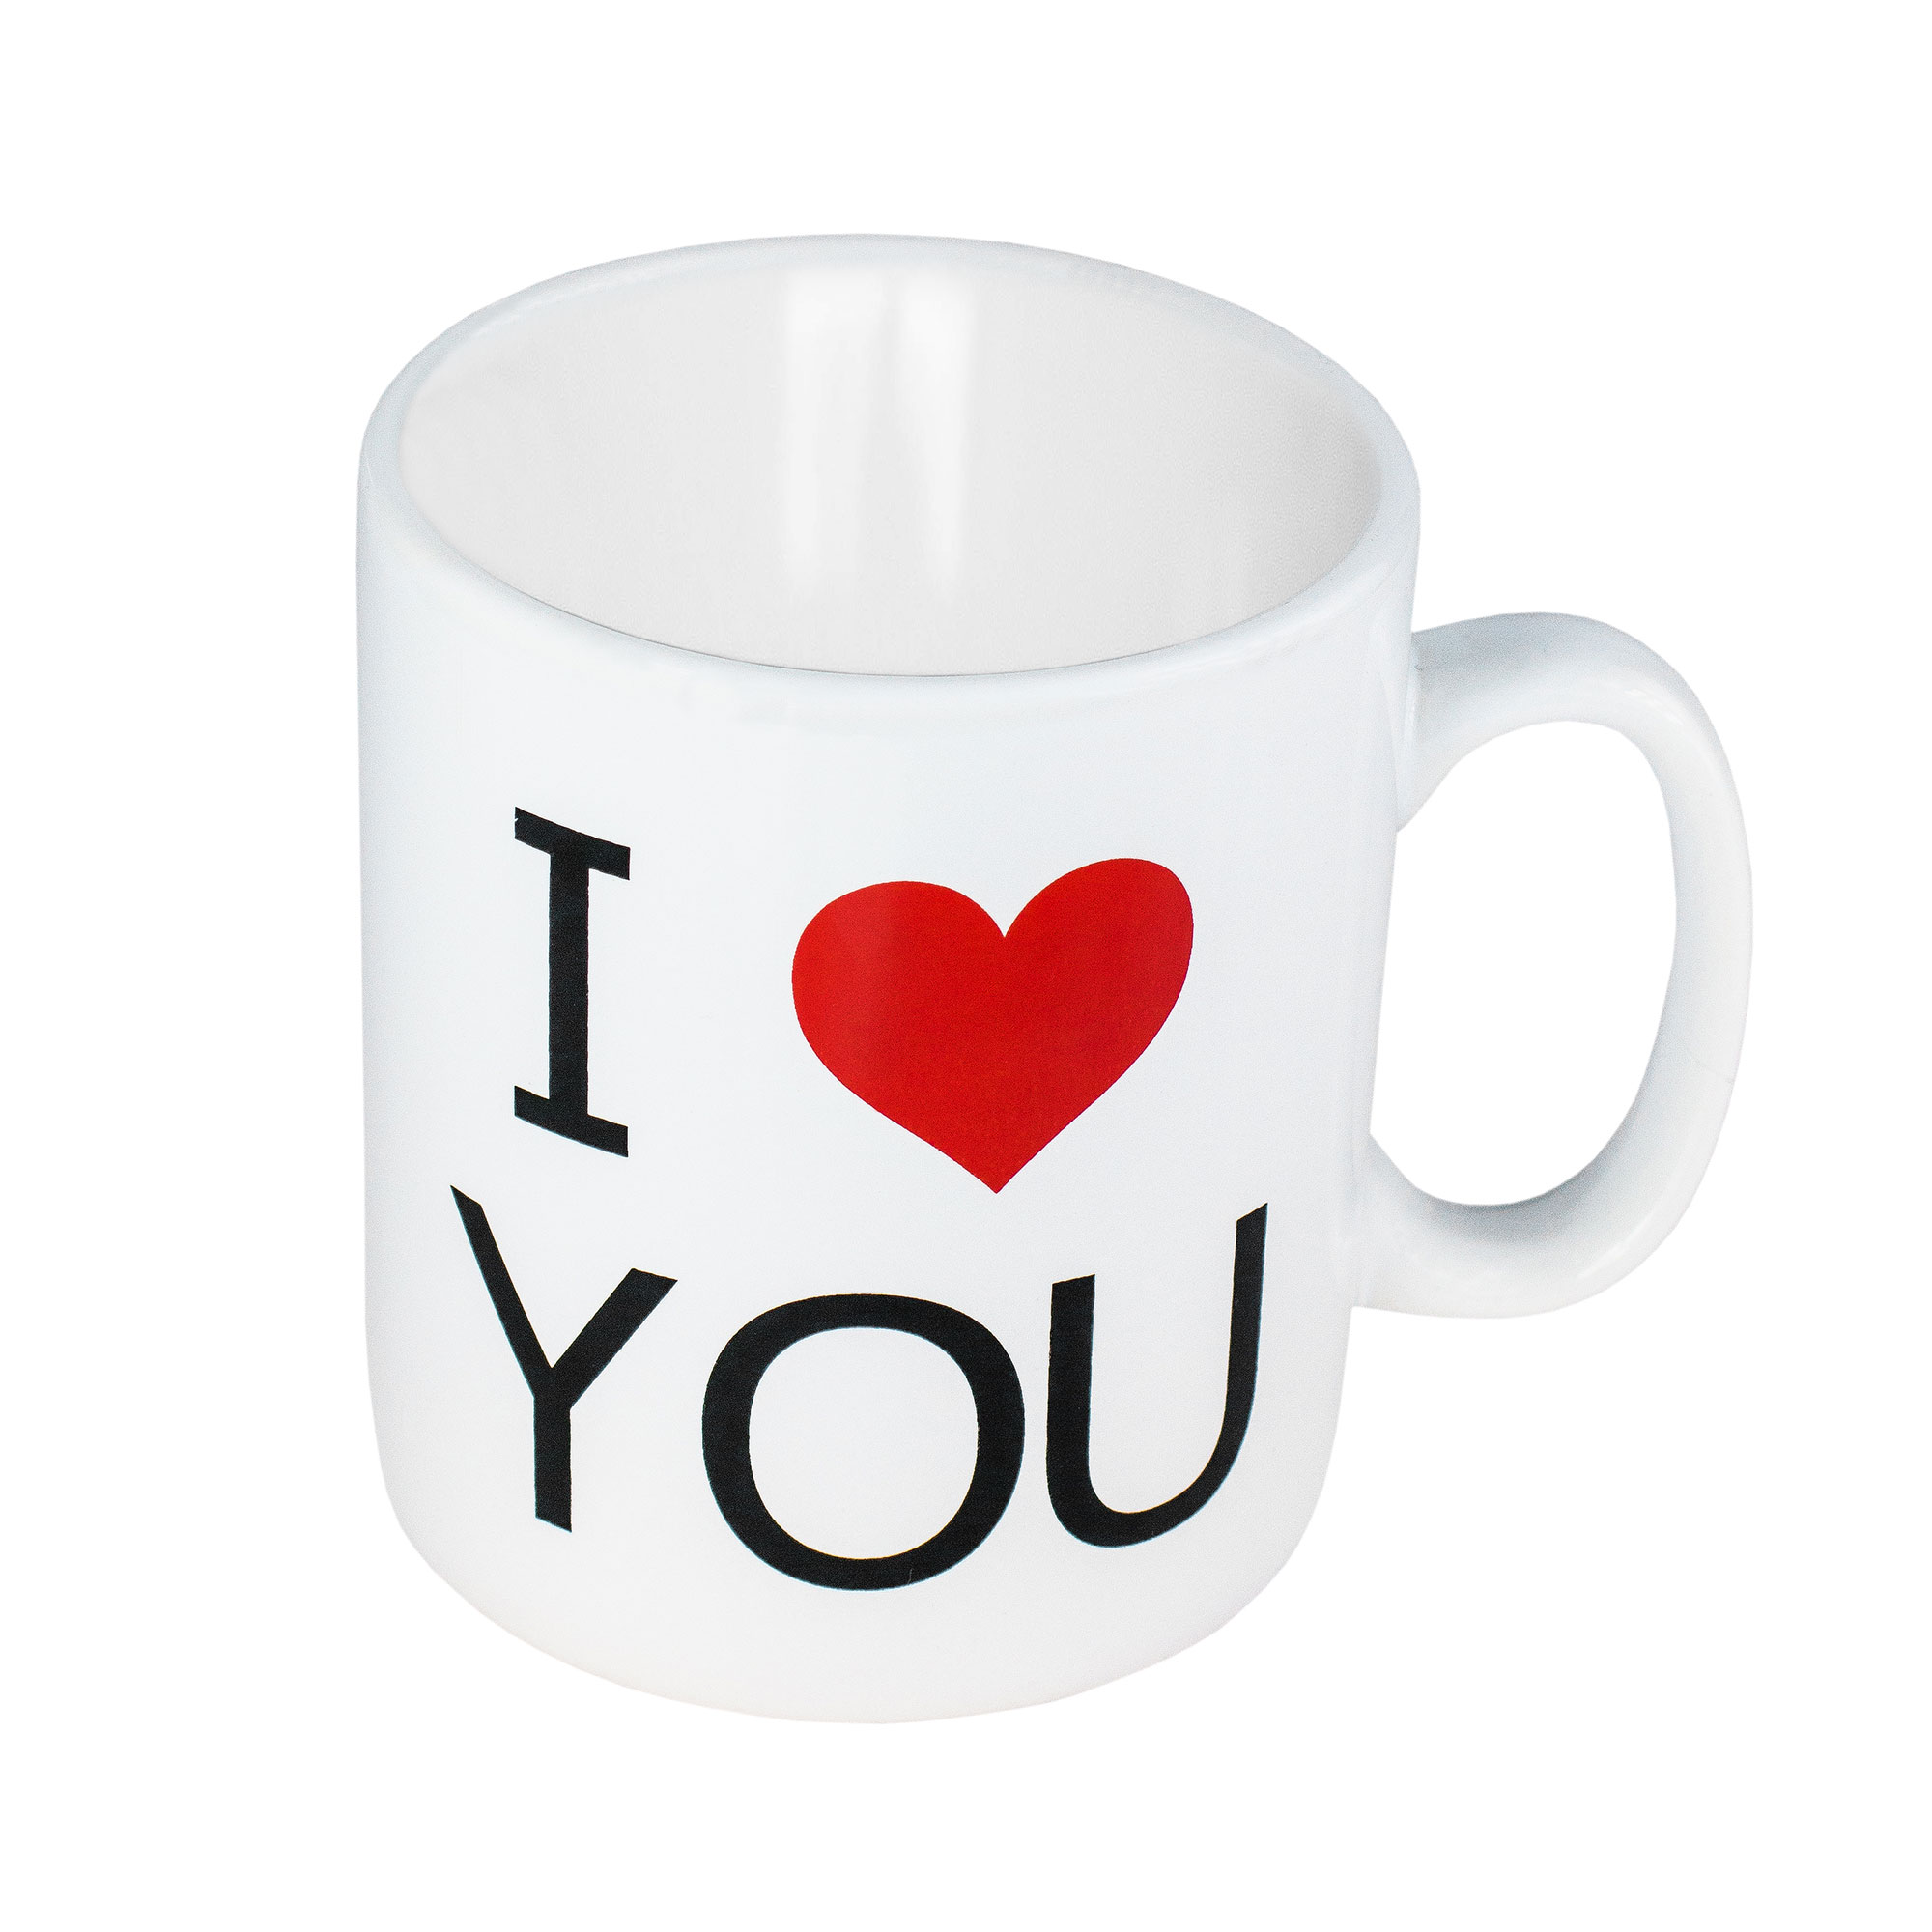 XL Kaffeetasse "I LOVE YOU" 3673 - 1